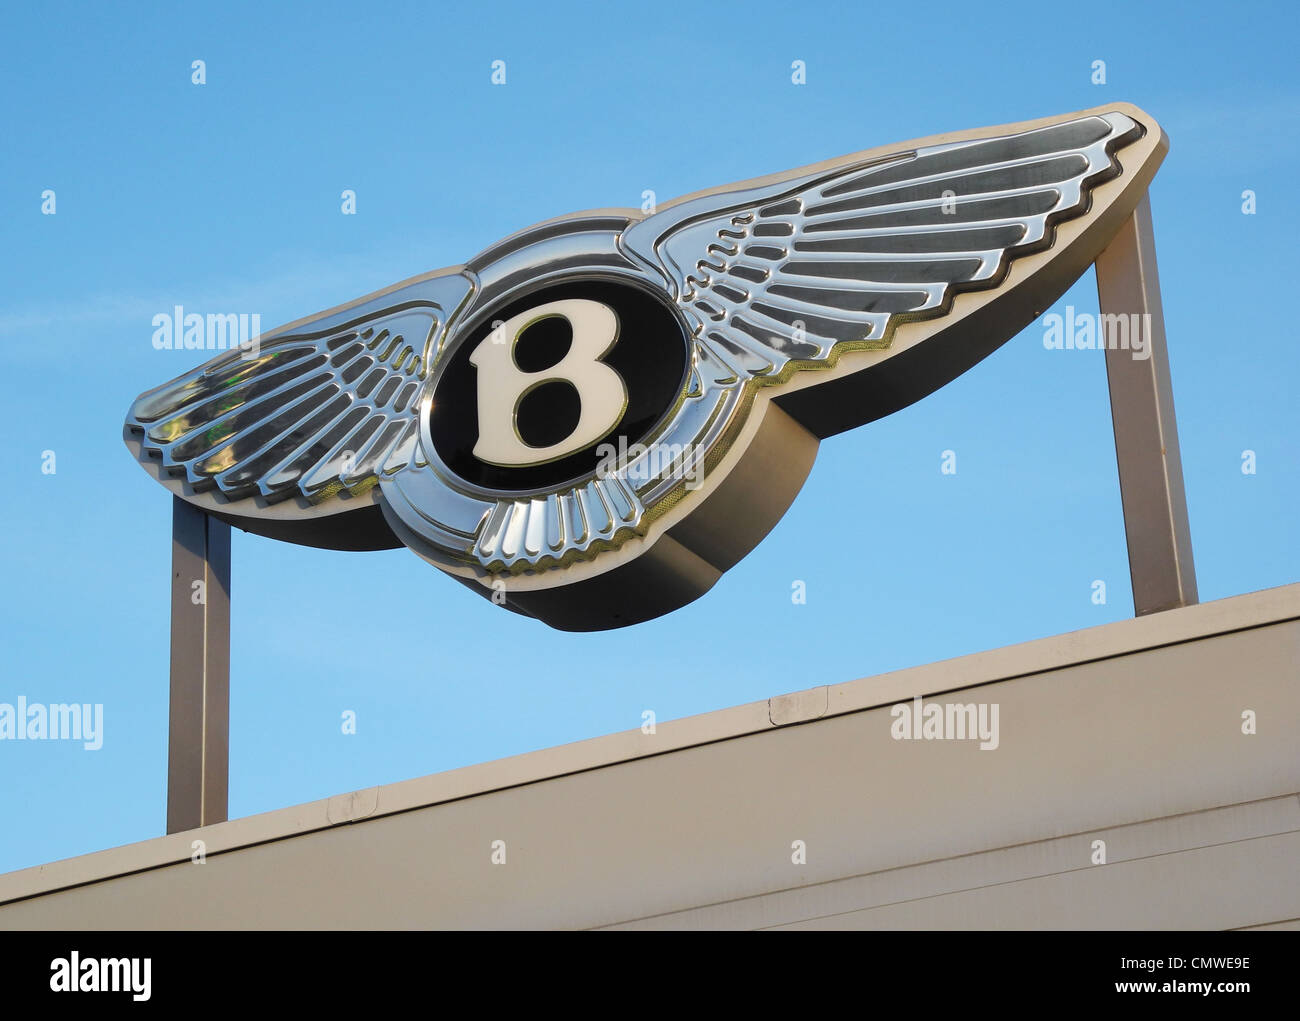 Bentley Auto Unternehmen Marke auf eine Garage redaktionelle Nutzung ist nur im Rahmen einer Auto-Vertriebsgebäude aus öffentlichen Straßen fotografiert dies kein Faksimile-Reproduktion copyright Zwecken. Stockfoto